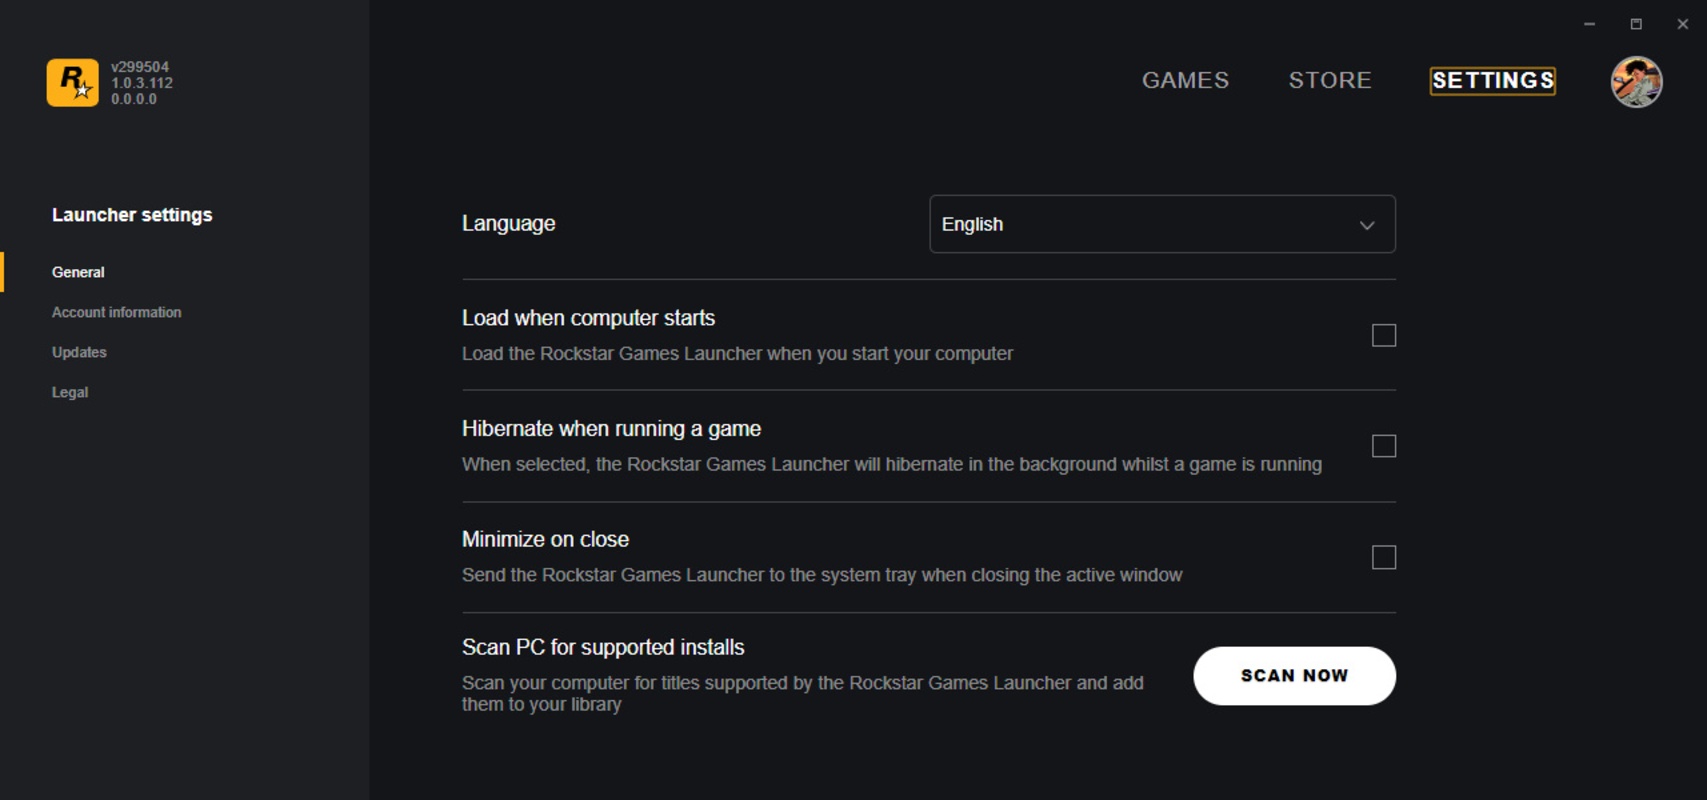 Rockstar Games Launcher 1.0.81.1699 for Windows Screenshot 3